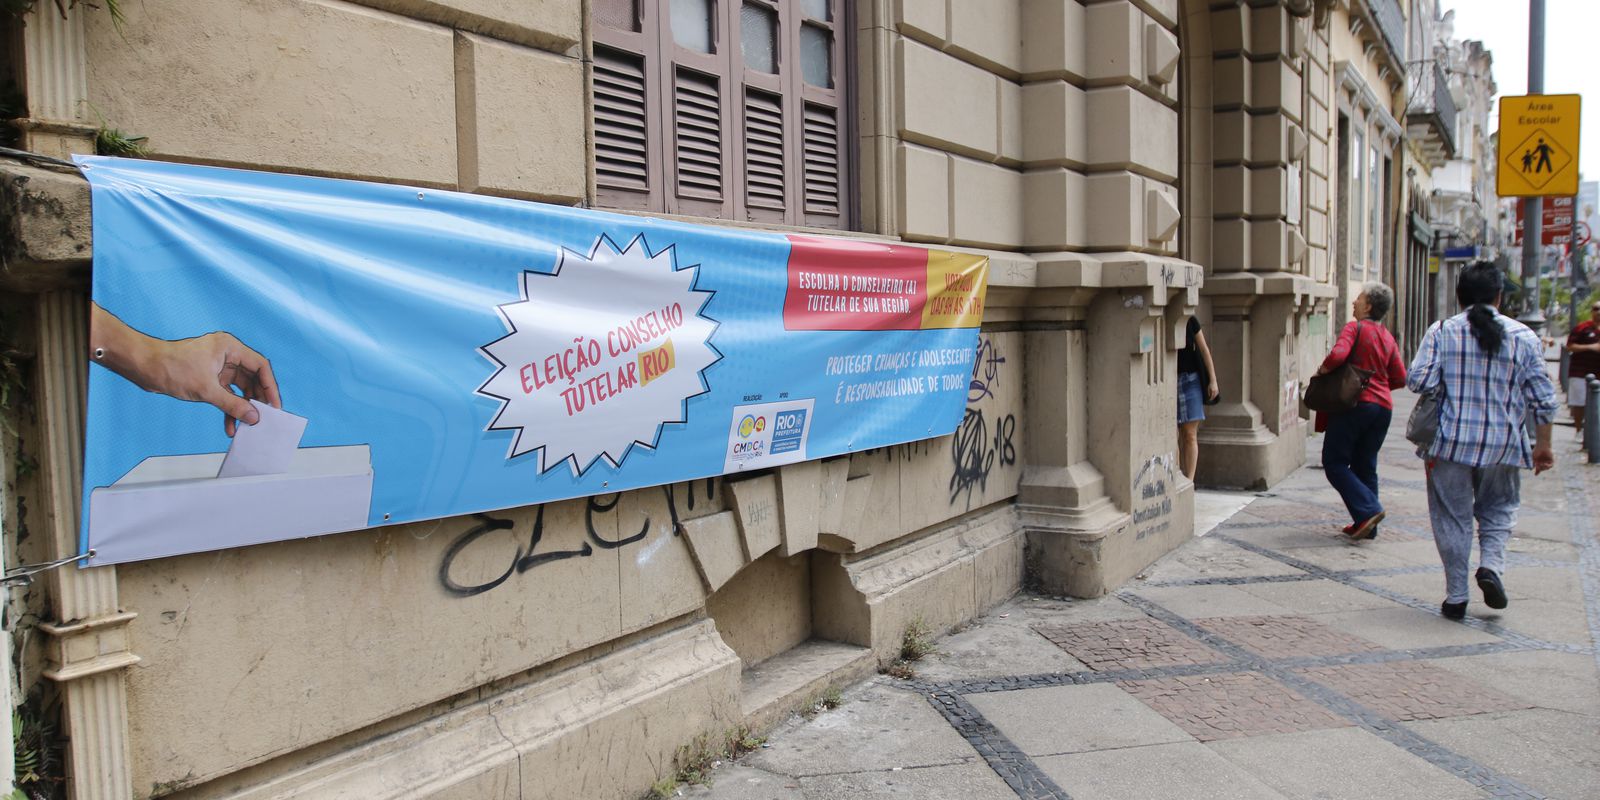 Eleição de conselheiros tutelares em São José dos Pinhais: veja locais de  votação, Paraná